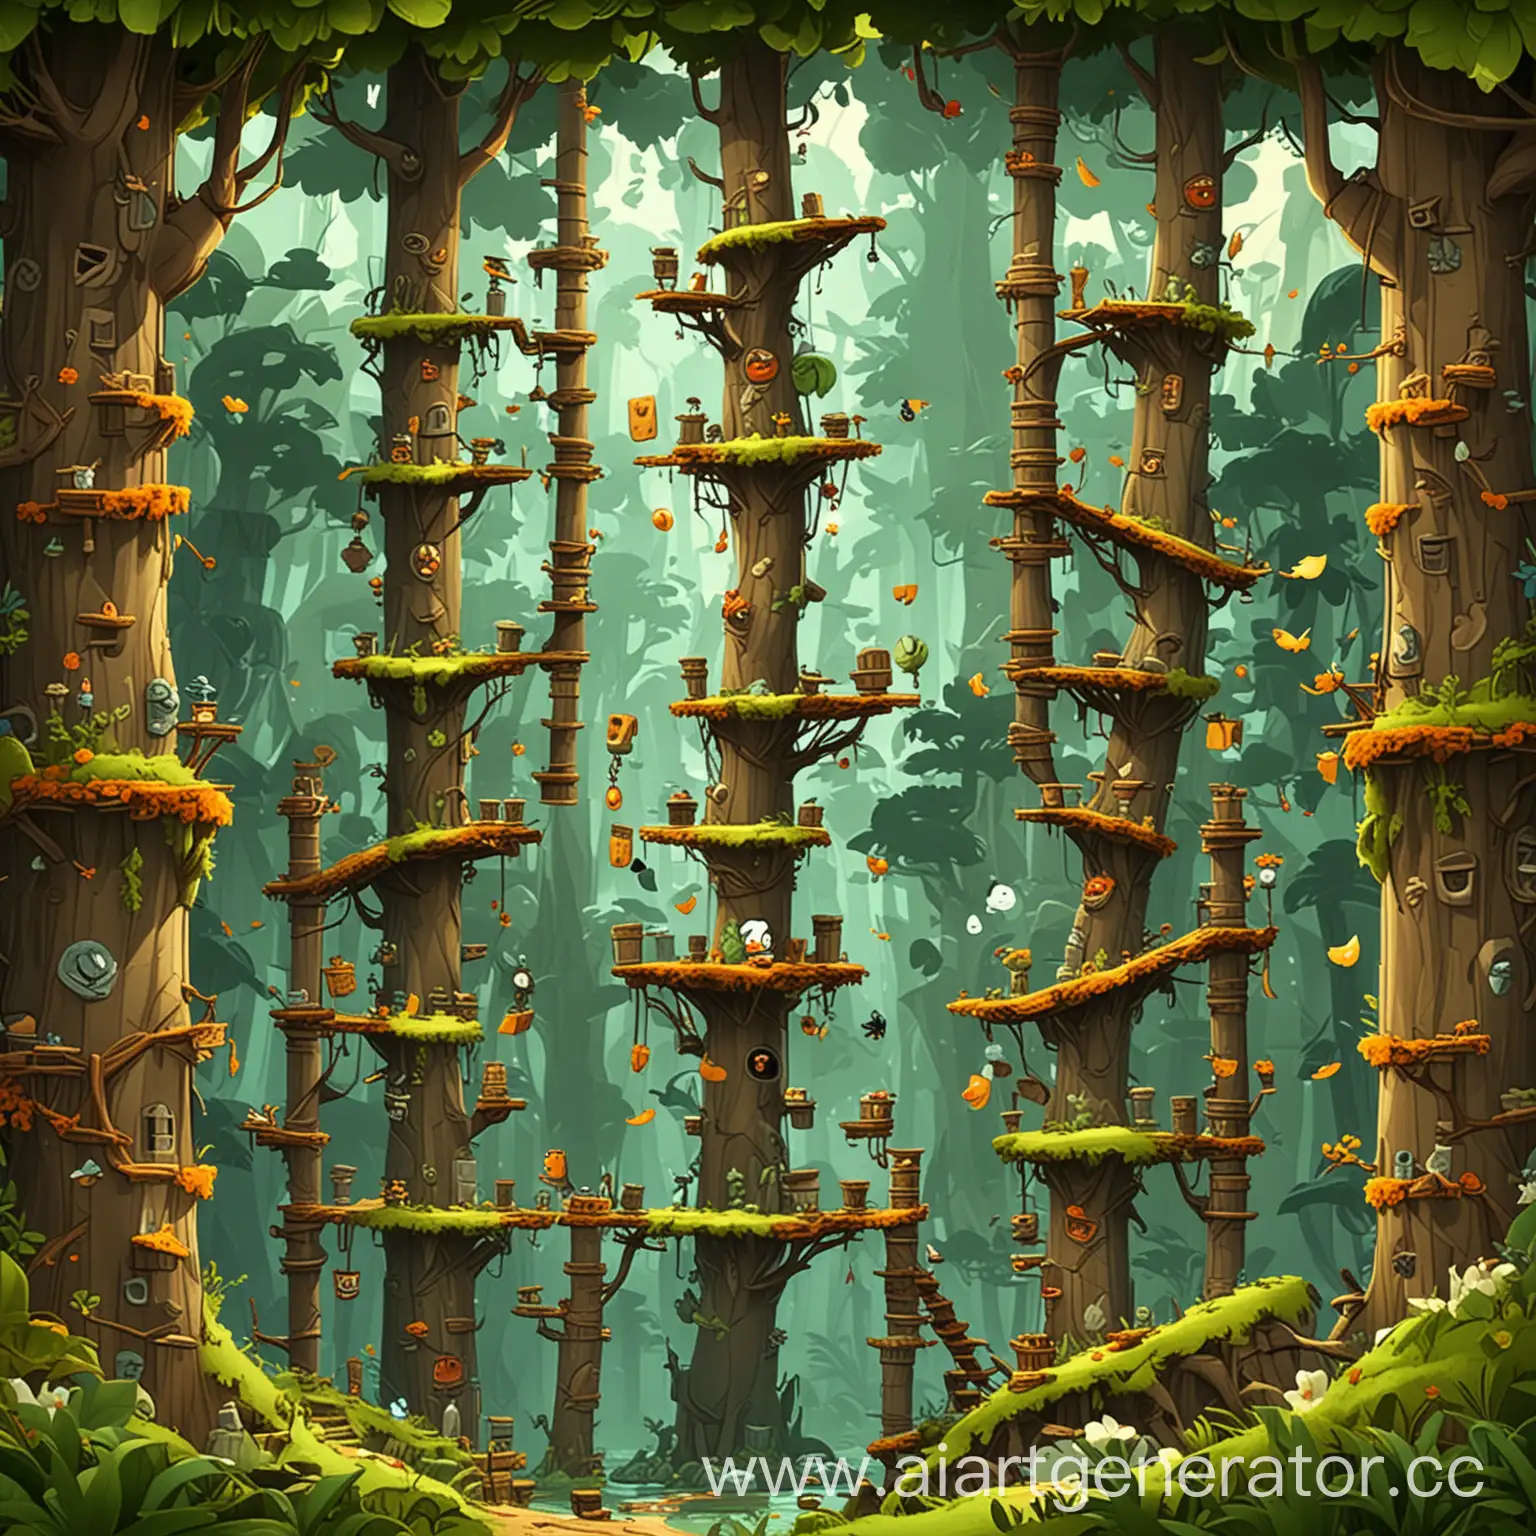 уровни игры, где красивый мультяшный лес в стиле angry birds, но без самих птиц